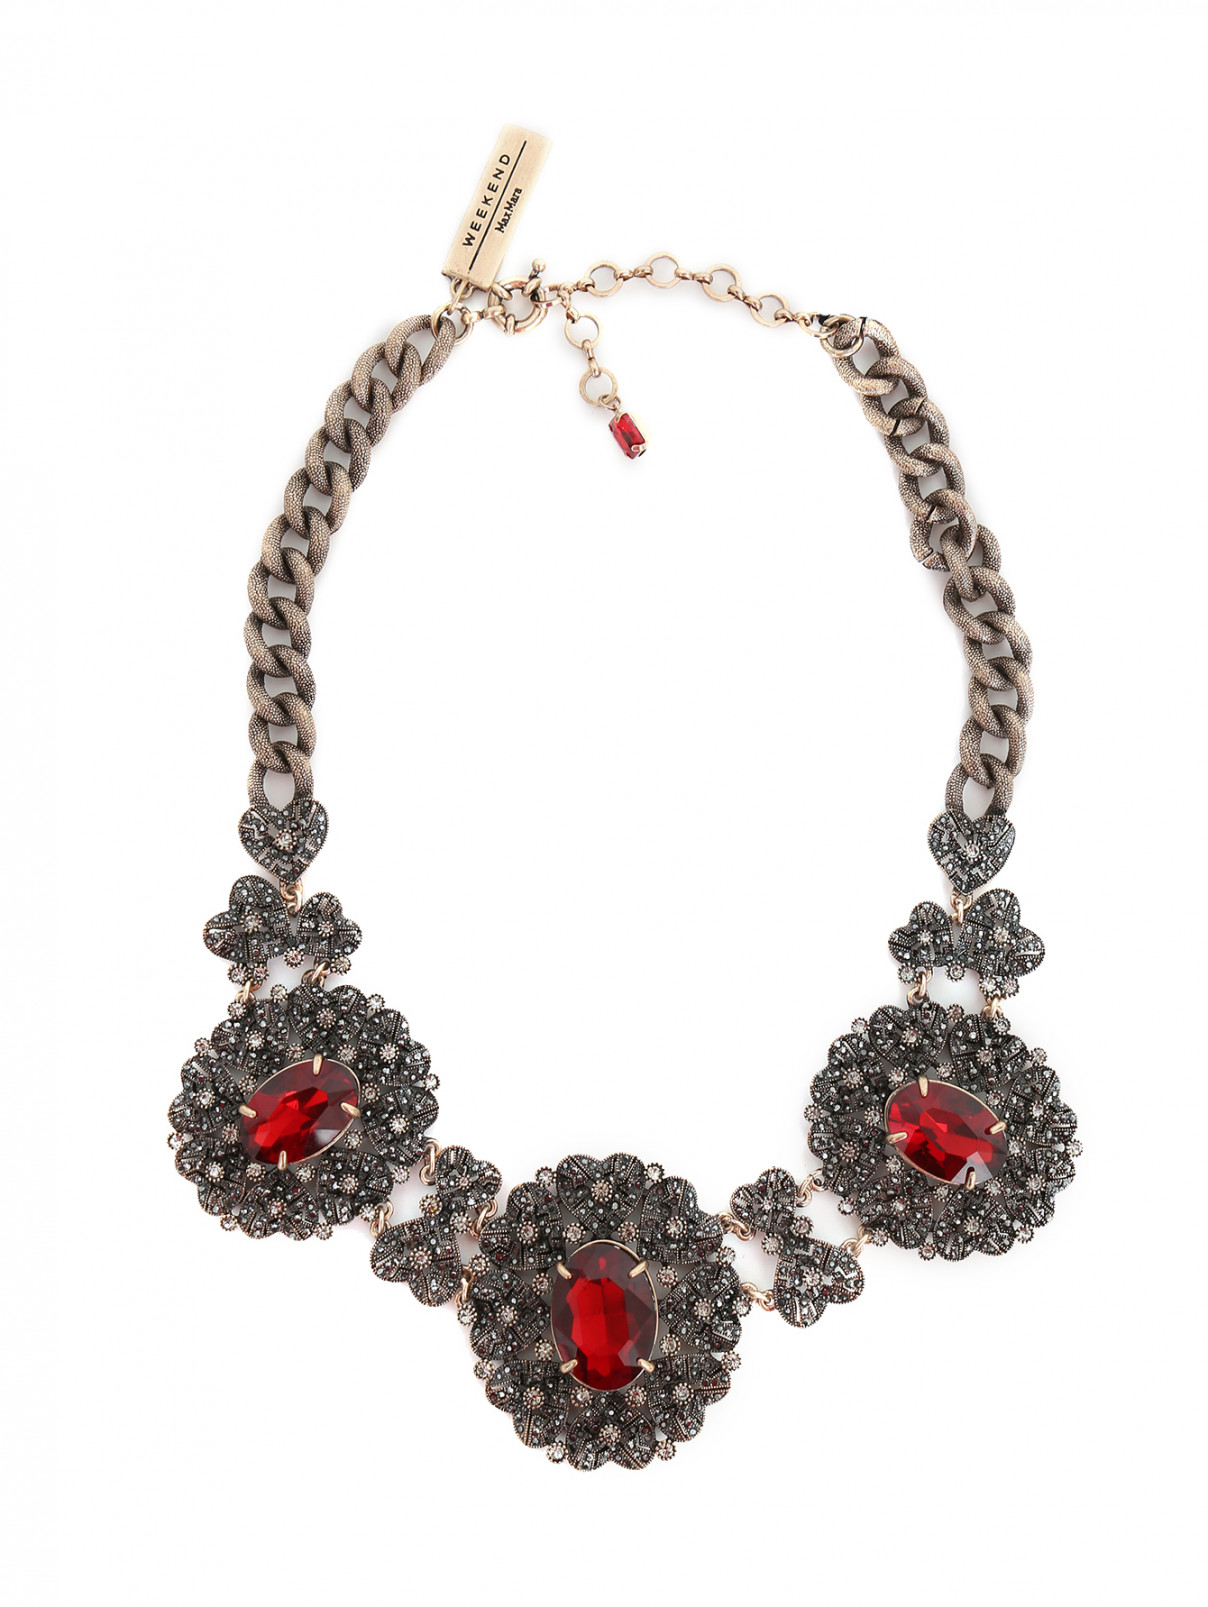 Ожерелье из металла декорированное кристаллами Weekend Max Mara  –  Общий вид  – Цвет:  Металлик